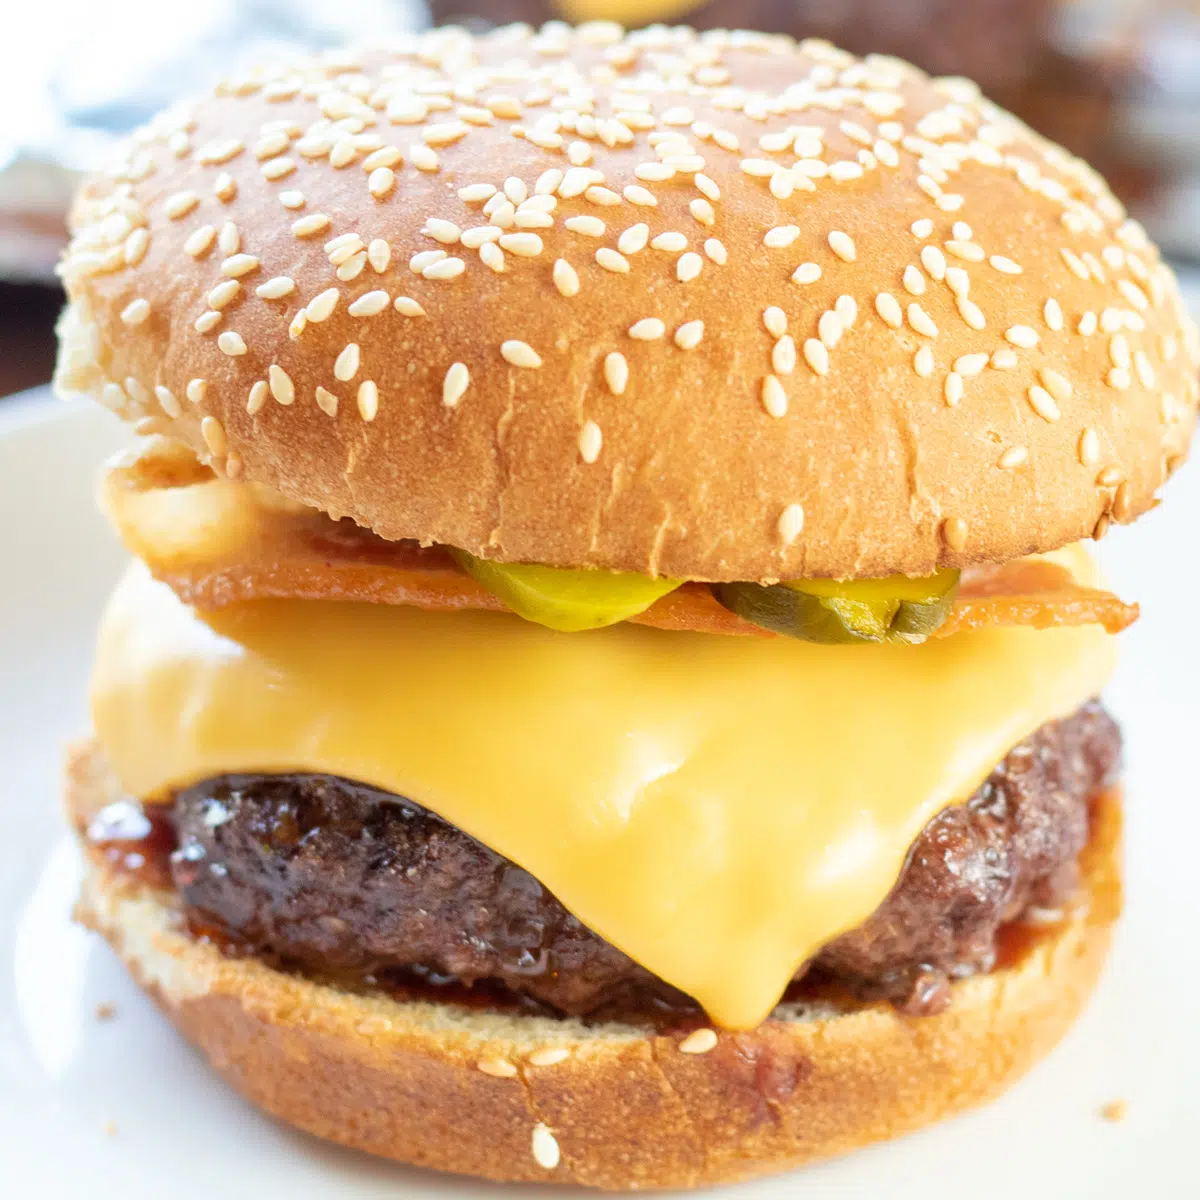 Čtvercový obrázek pečeného cheeseburgeru.